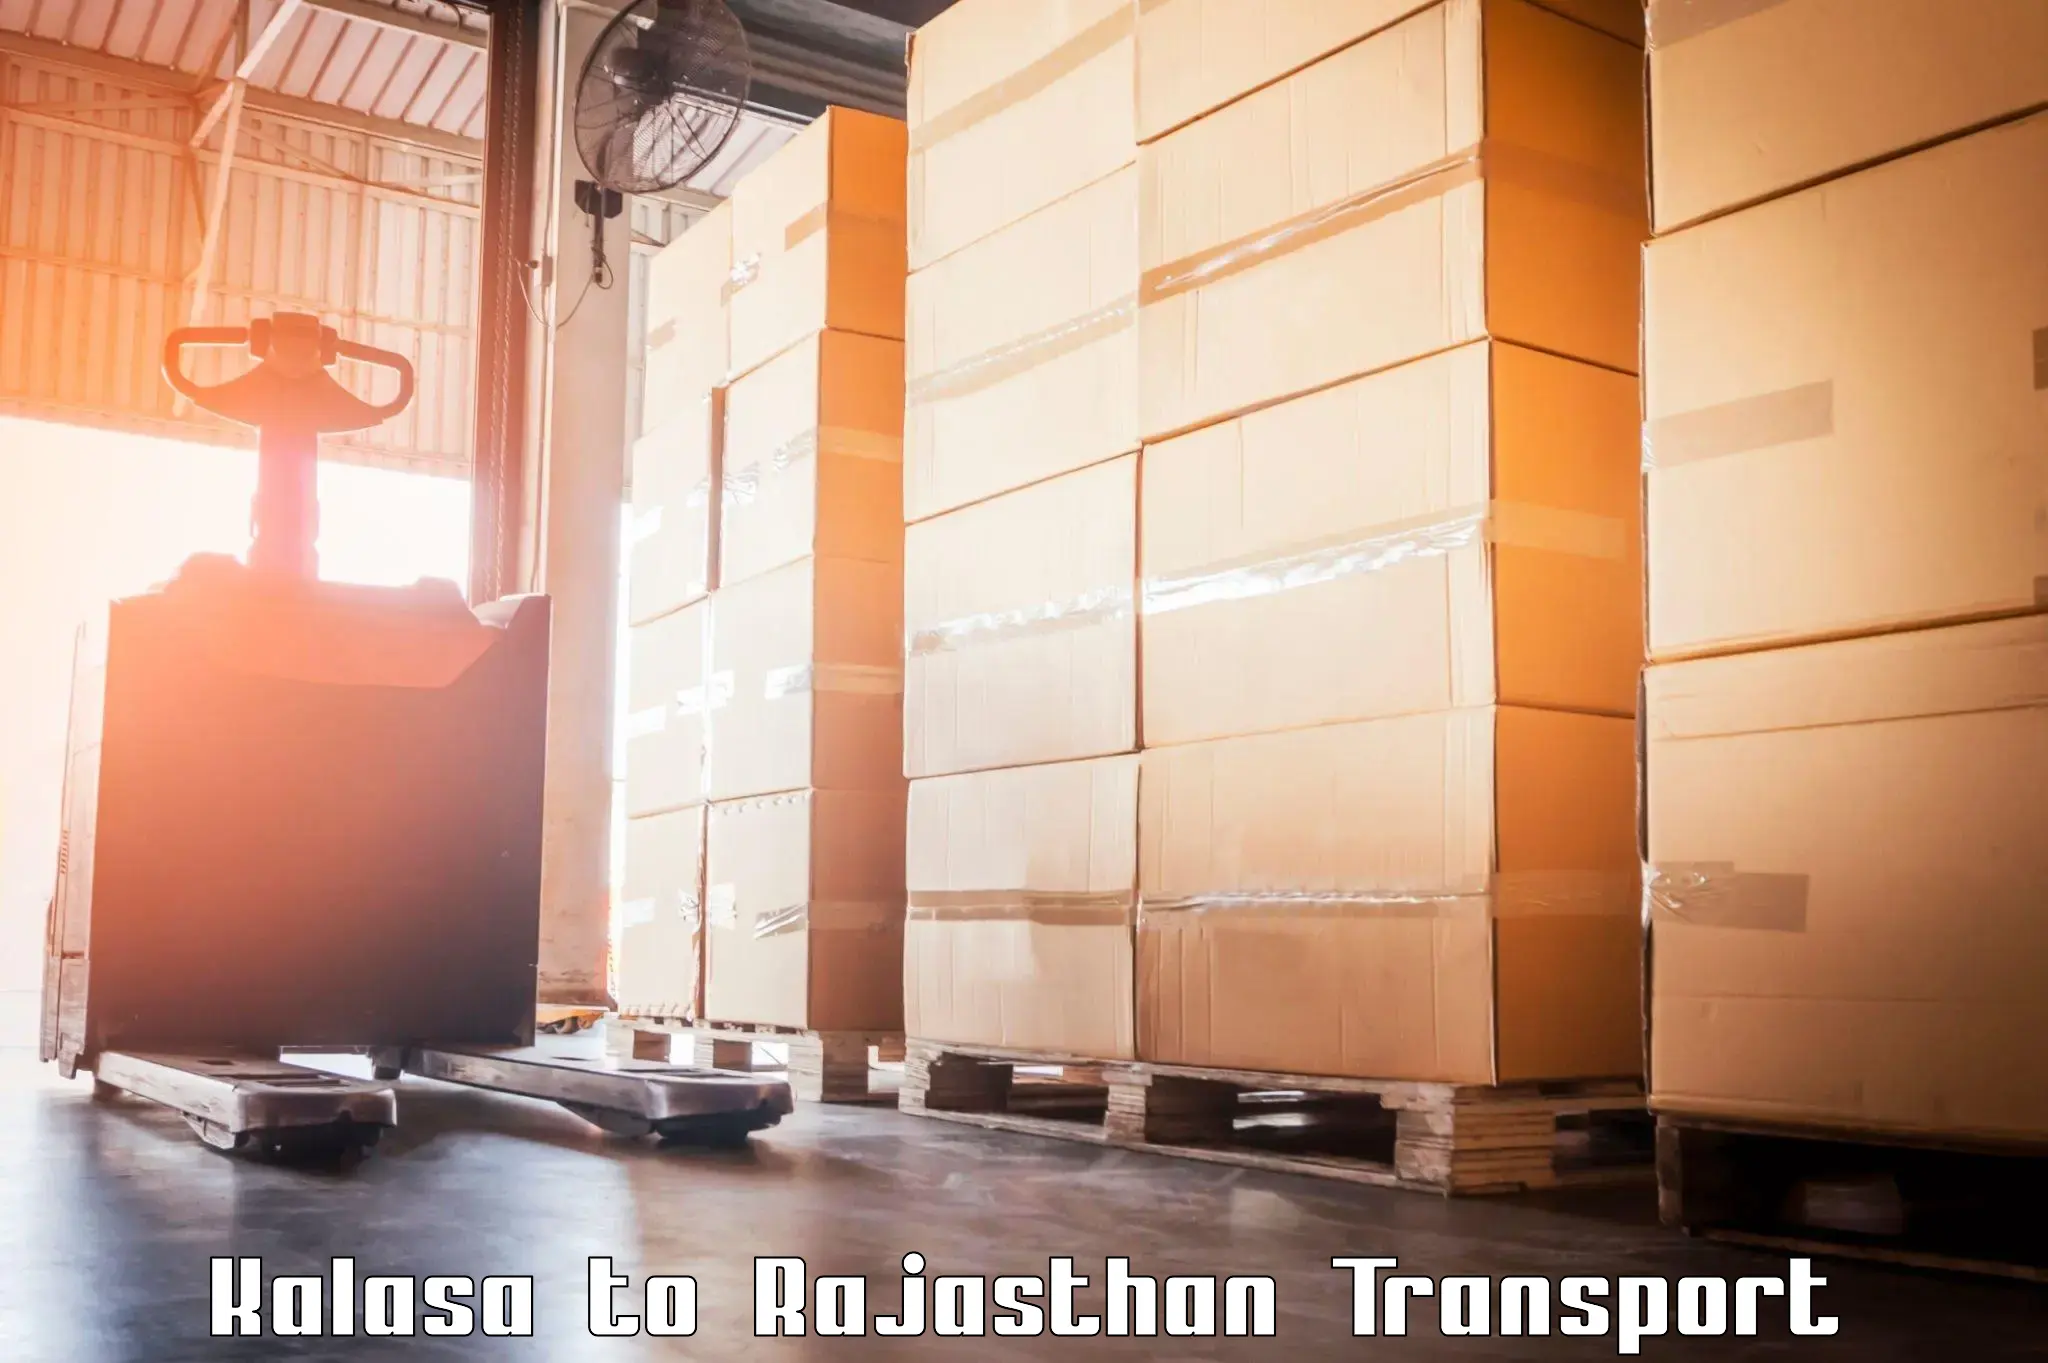 Transport services in Kalasa to Rajasthan